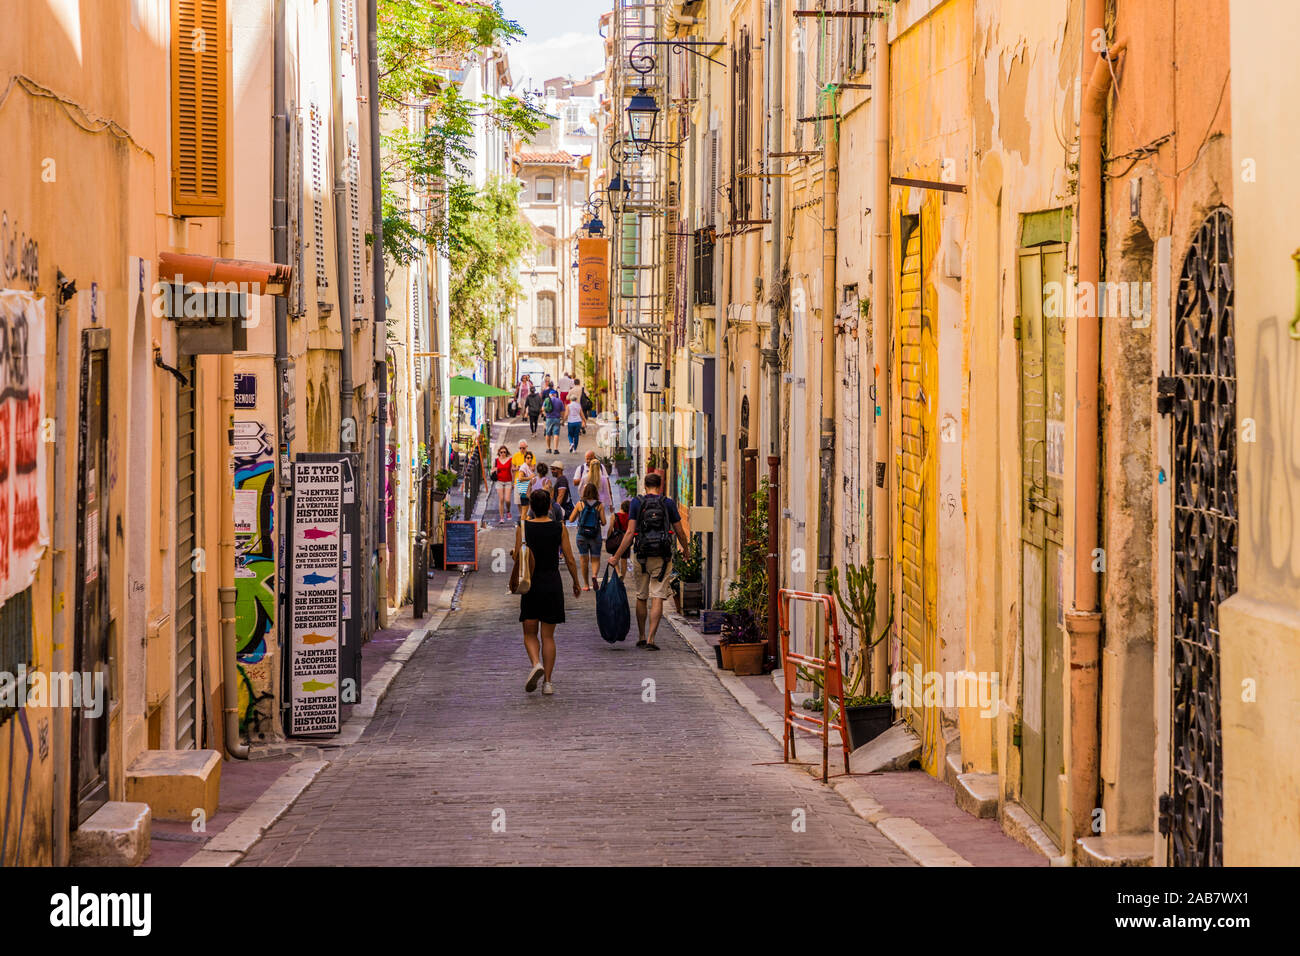 Les rues étroites de la vieille ville, le panier, Marseille, Bouches du Rhone, Provence, France, Europe, Méditerranée Banque D'Images